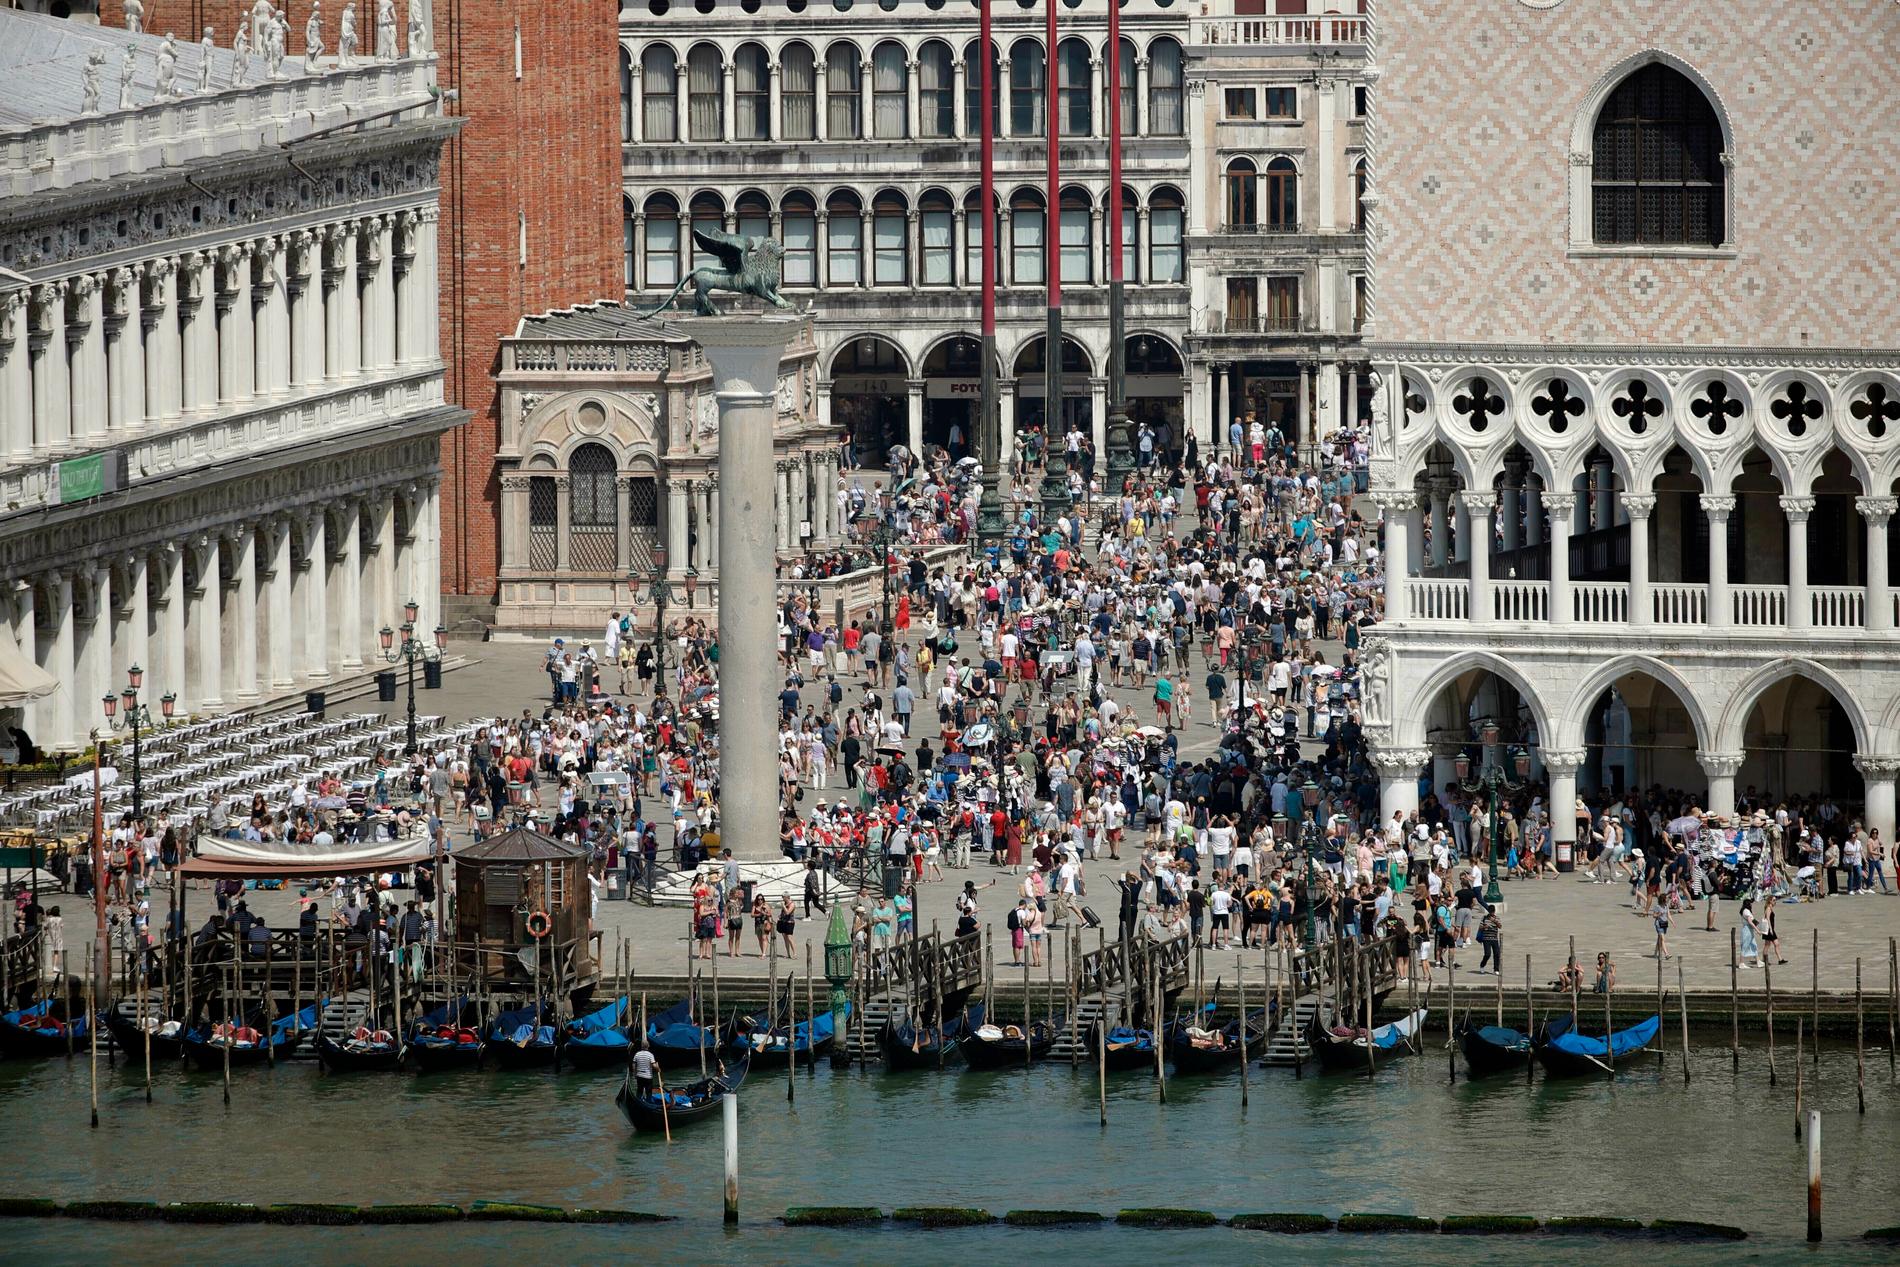 De stora sällskapen av turister leder till kaos på de pittoreska gatorna i Venedig, menar italienska myndigheterna.